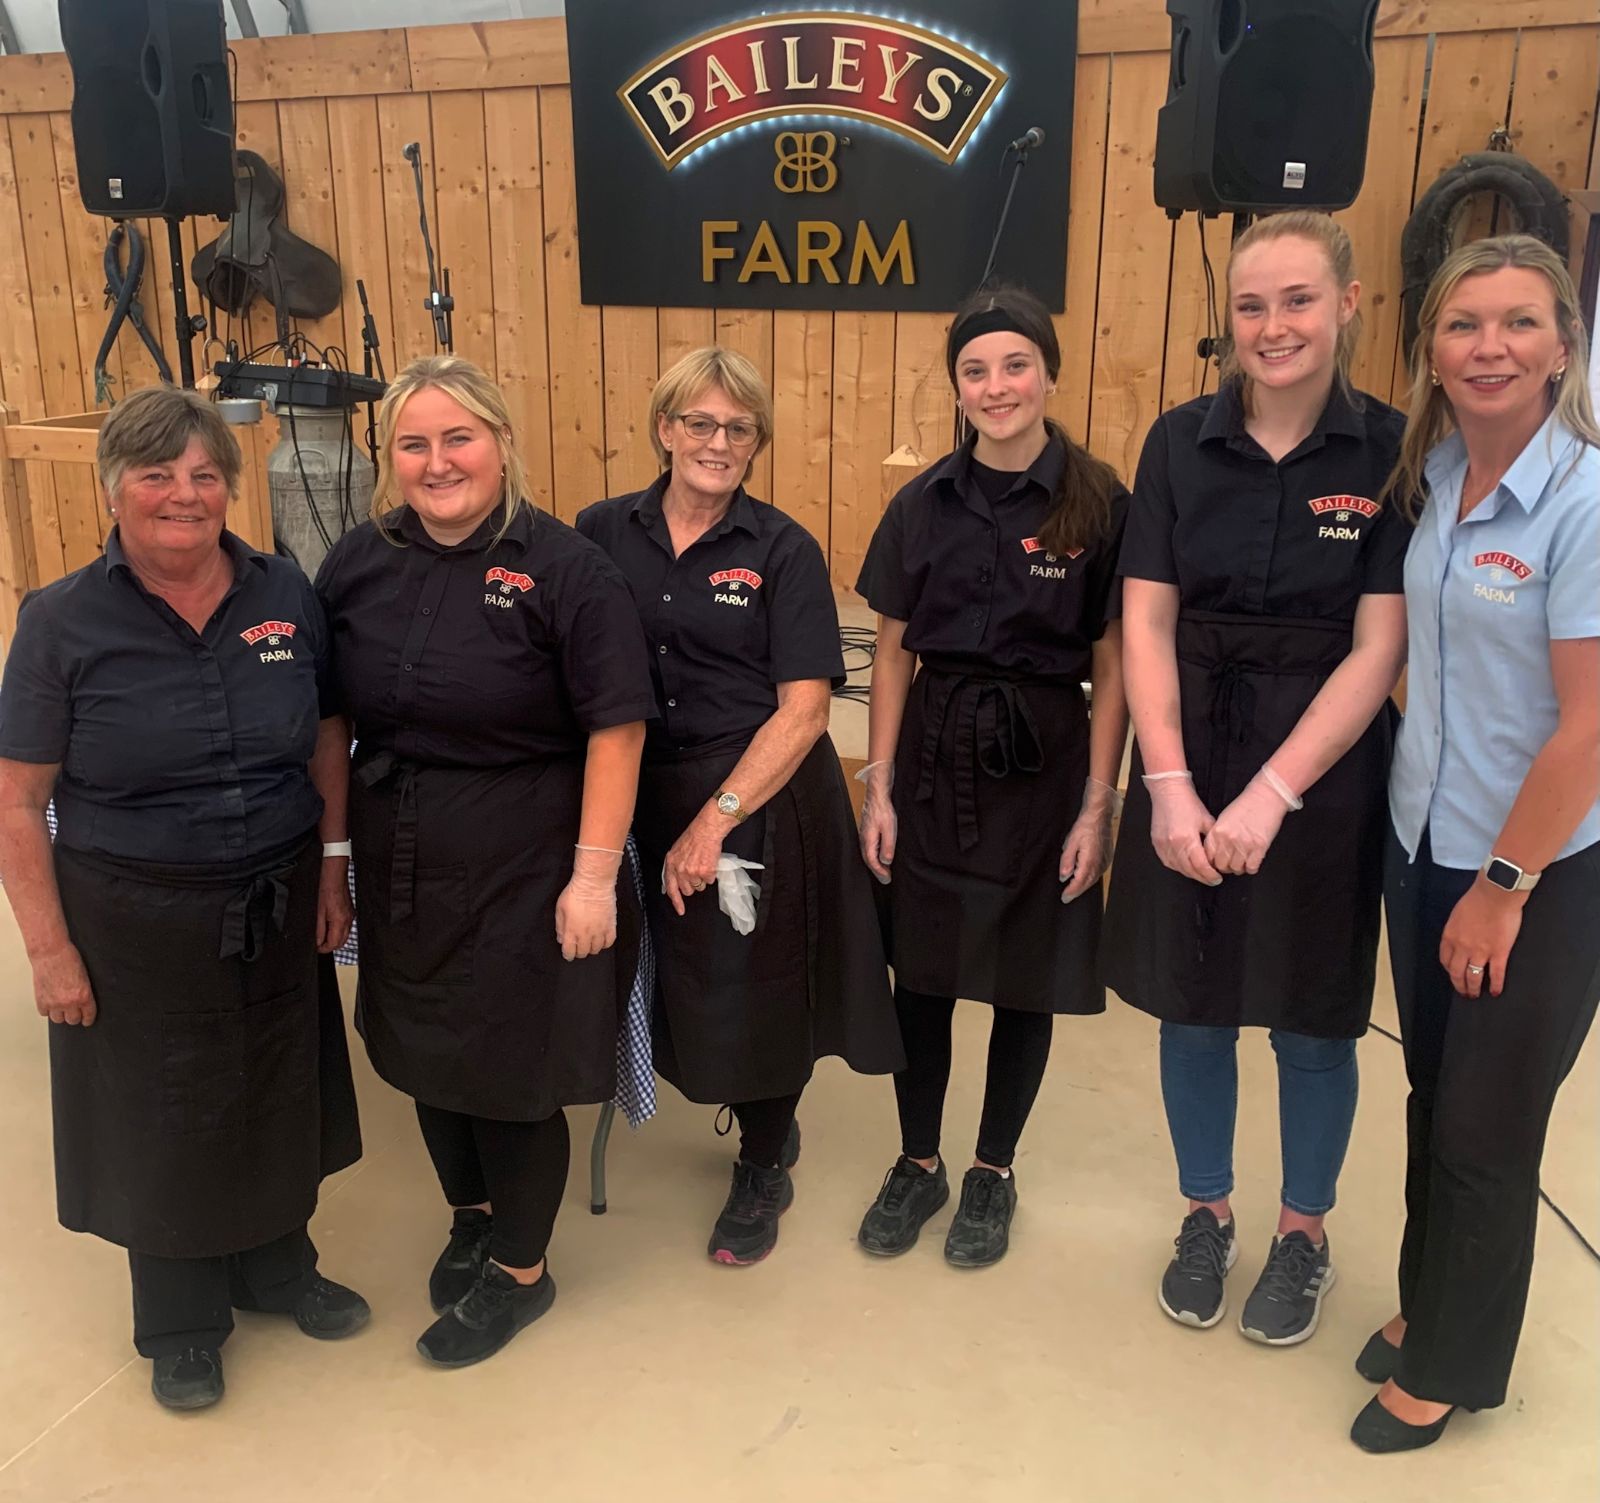 Baileys Farm Team